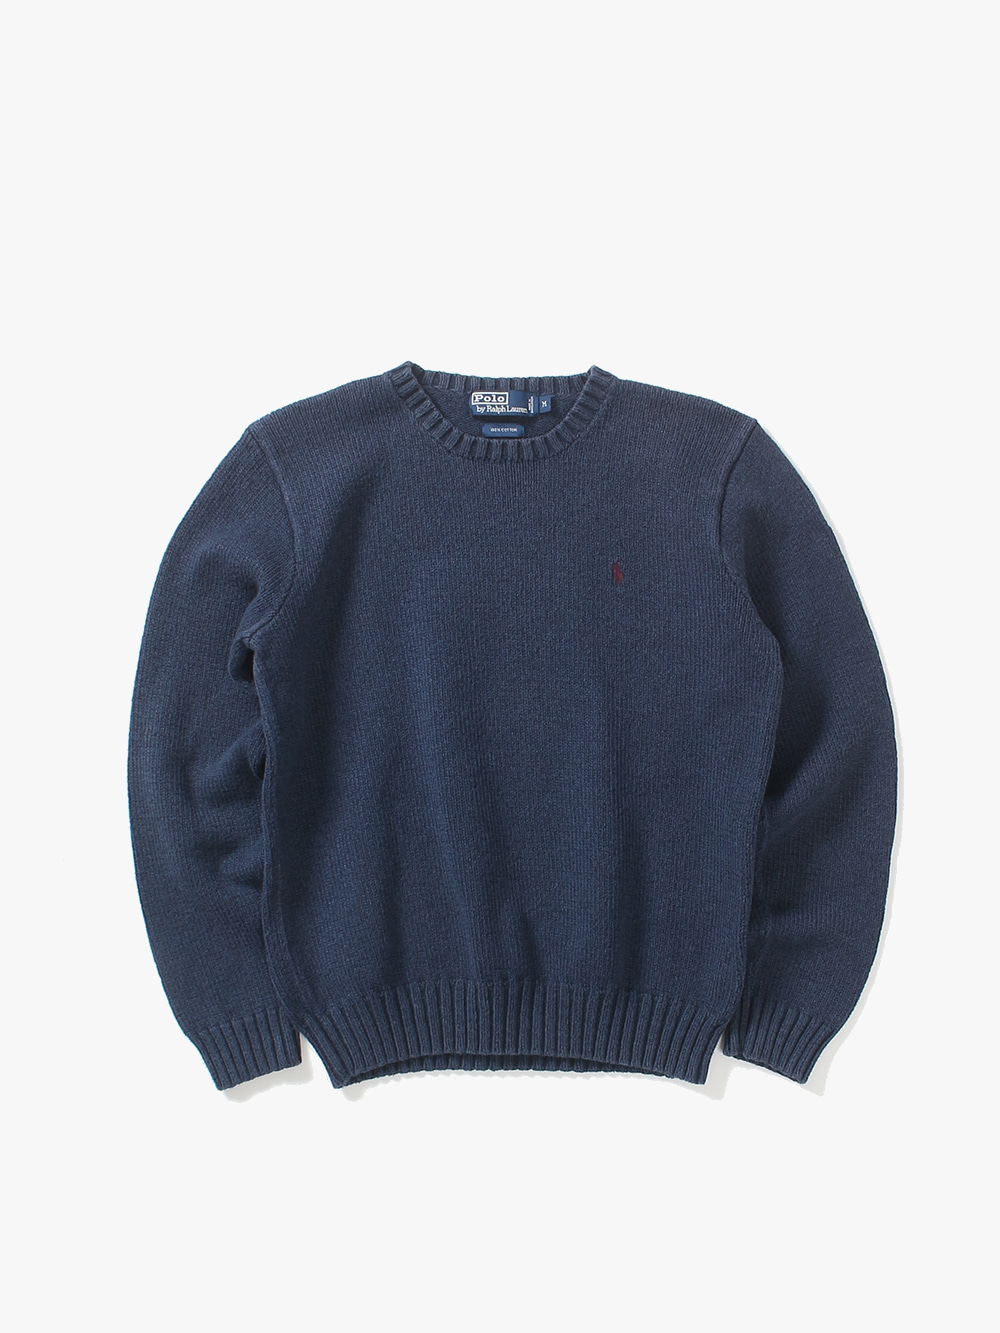 [ M ] Polo Ralph Lauren Sweater (6365)